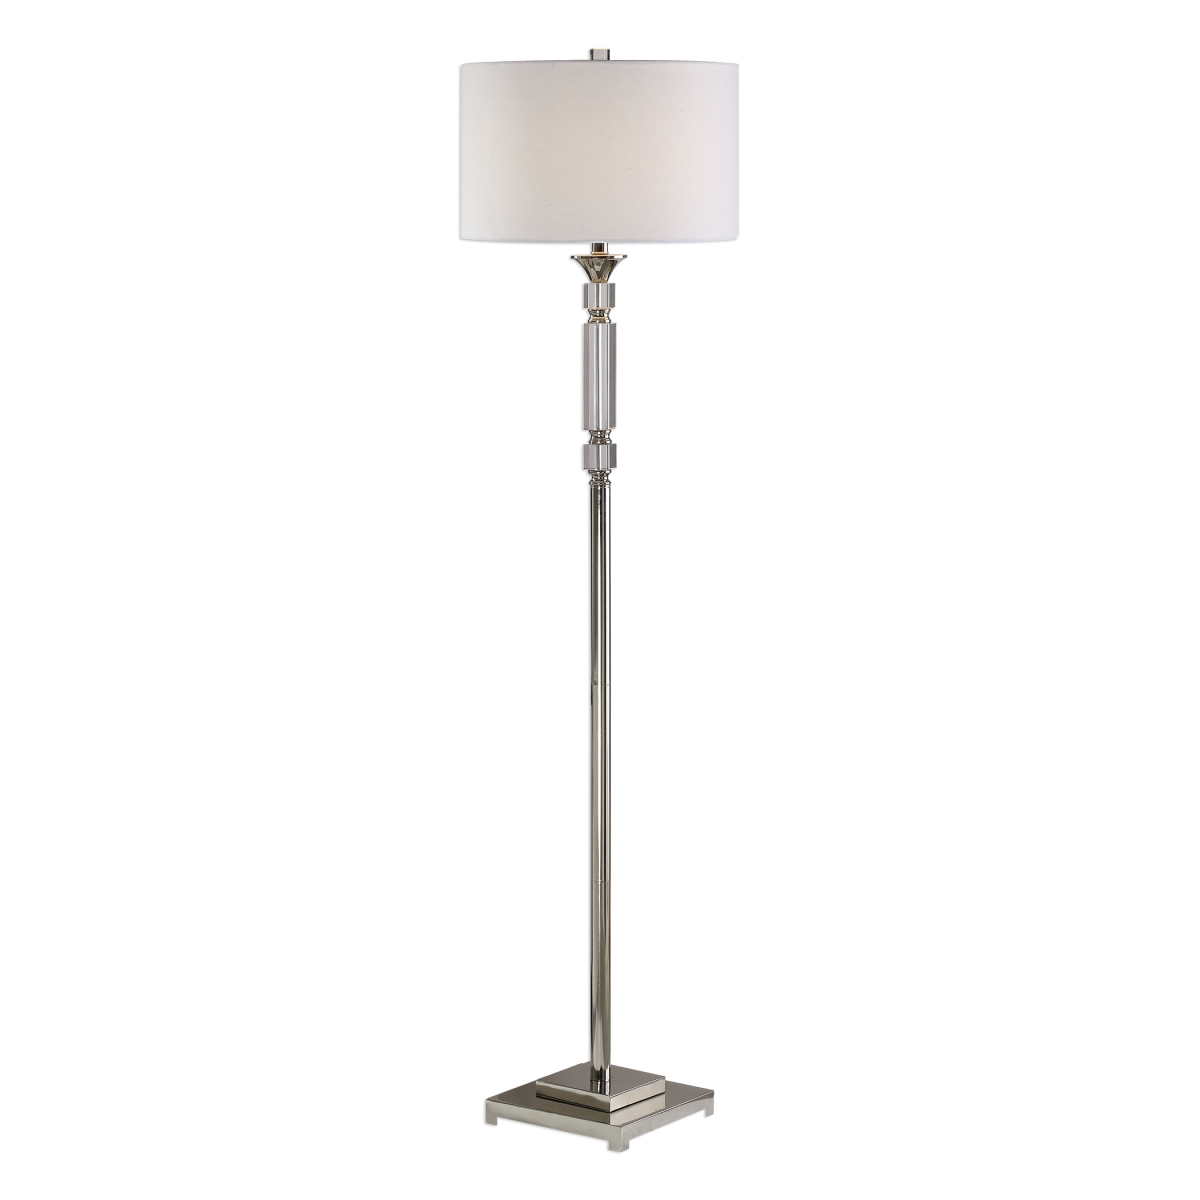 Picture of 212 Main 28165-1 Volusia Nickel Floor Lamp